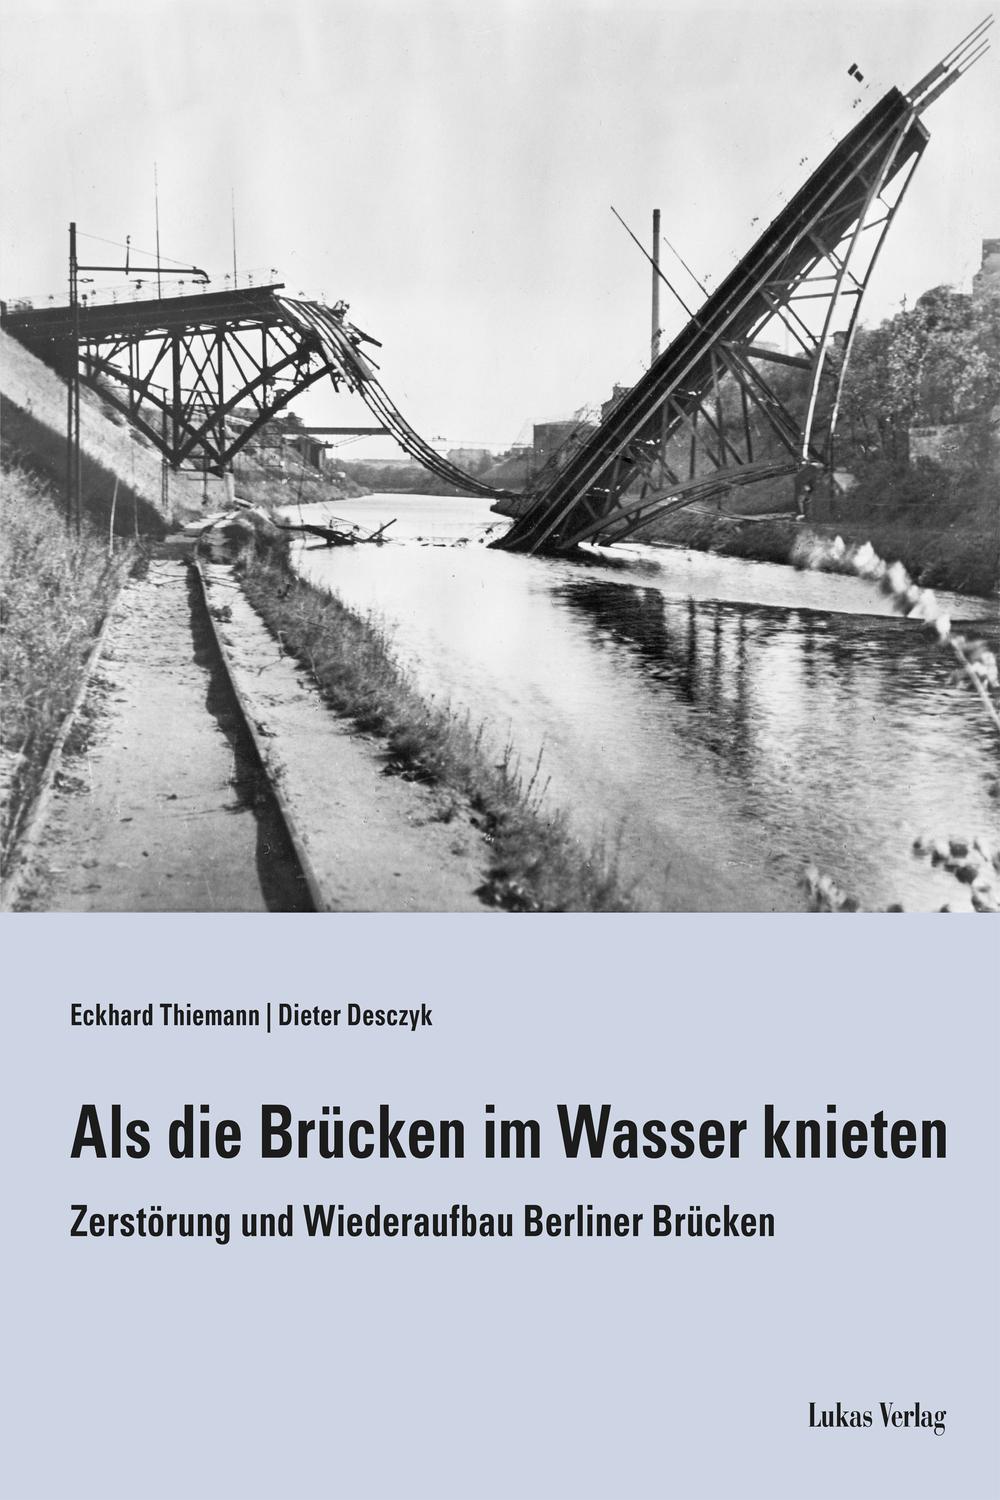 Als die Brücken im Wasser knieten - Eckhard Thiemann, Dieter Desczyk